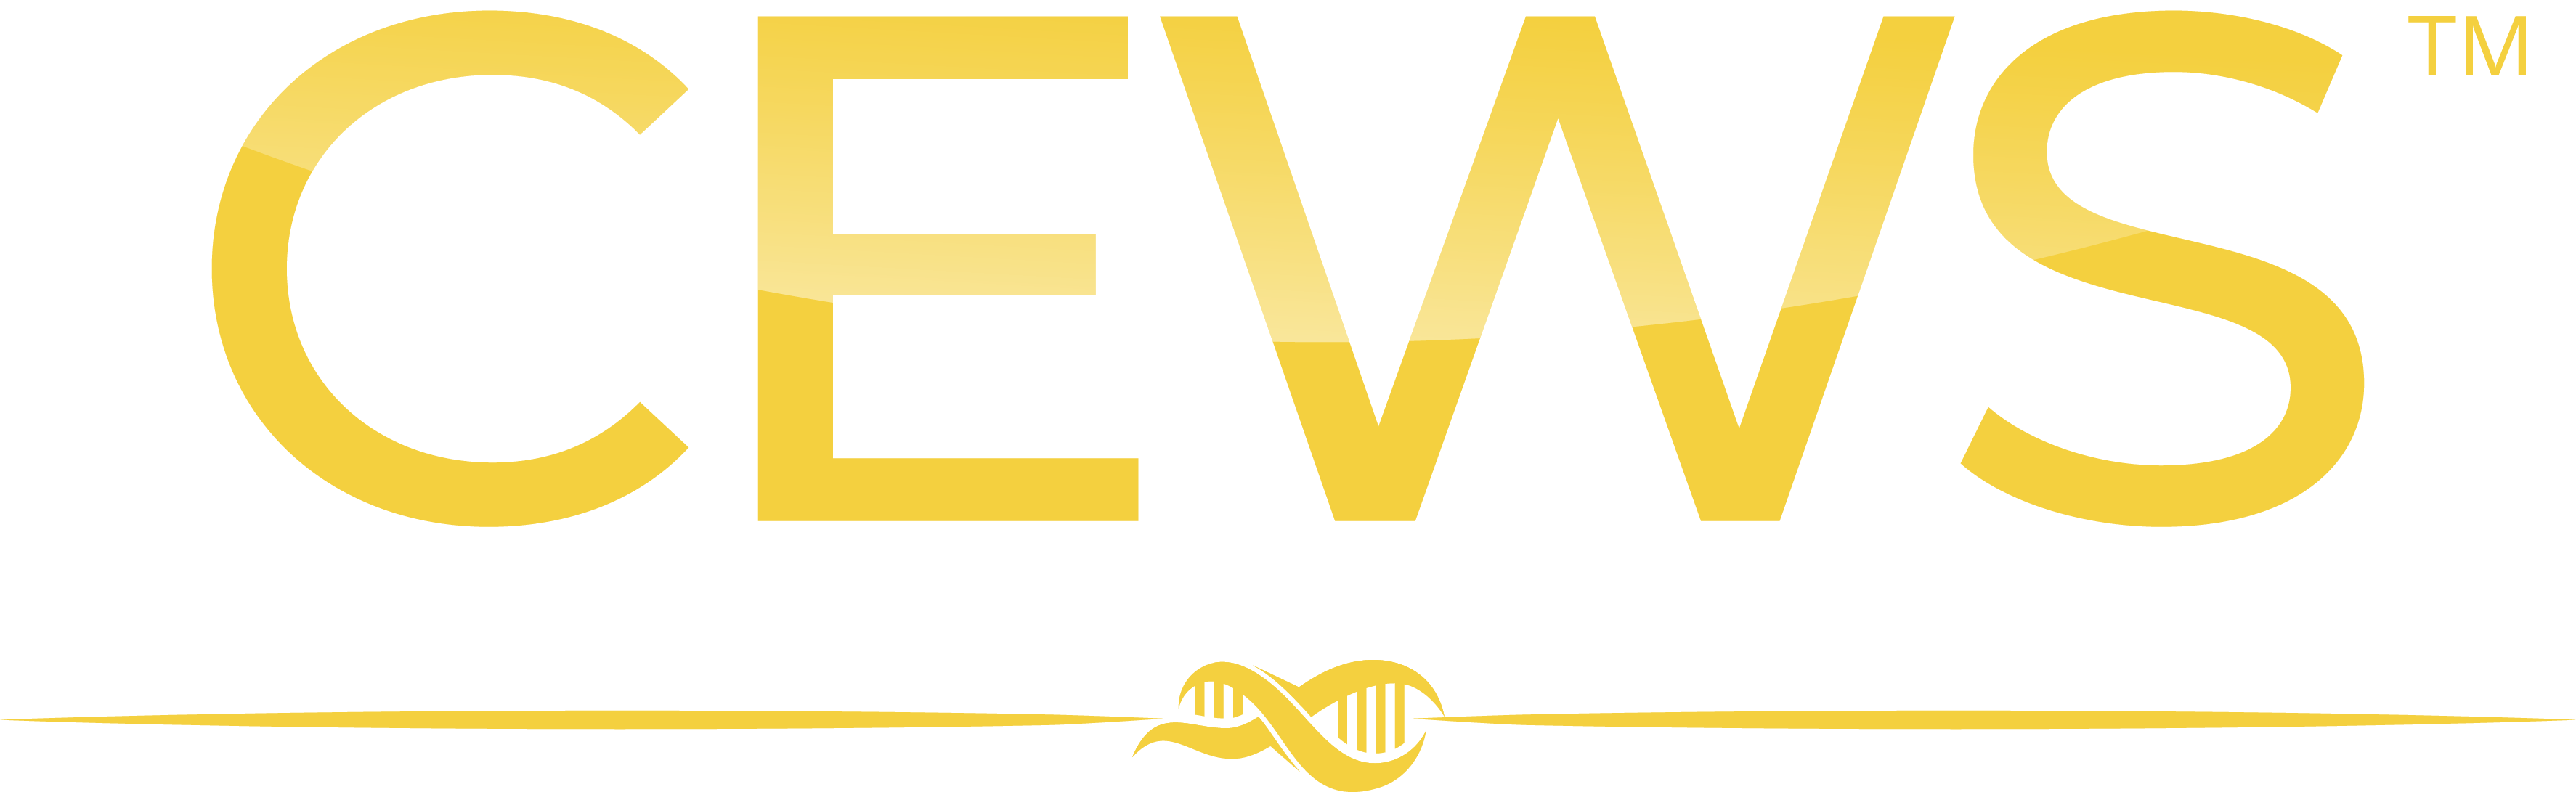 CEWS logo